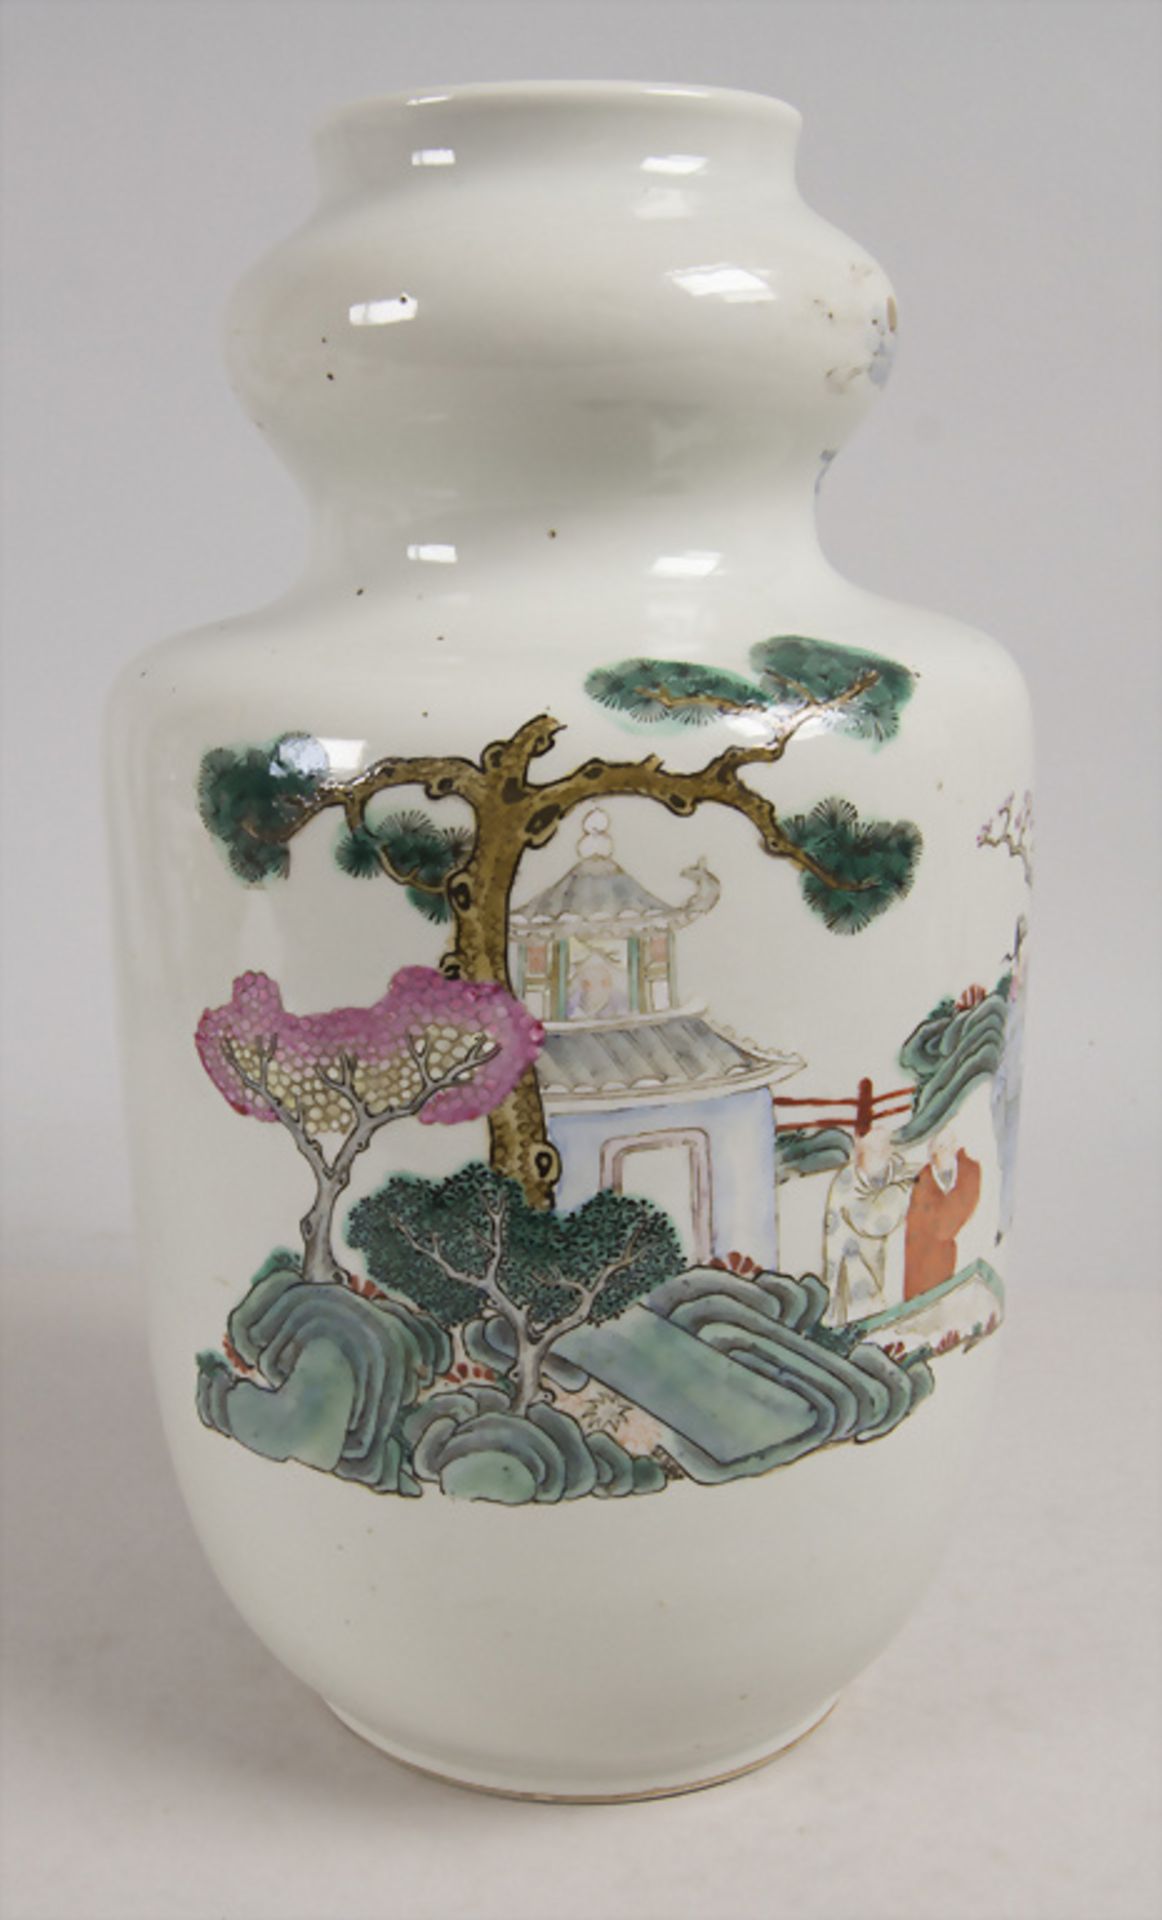 Ziervase / A decorative vase, China, Qing Dynastie (1644-1911), gemarkt Qianlong (1736-1795) - Bild 3 aus 10